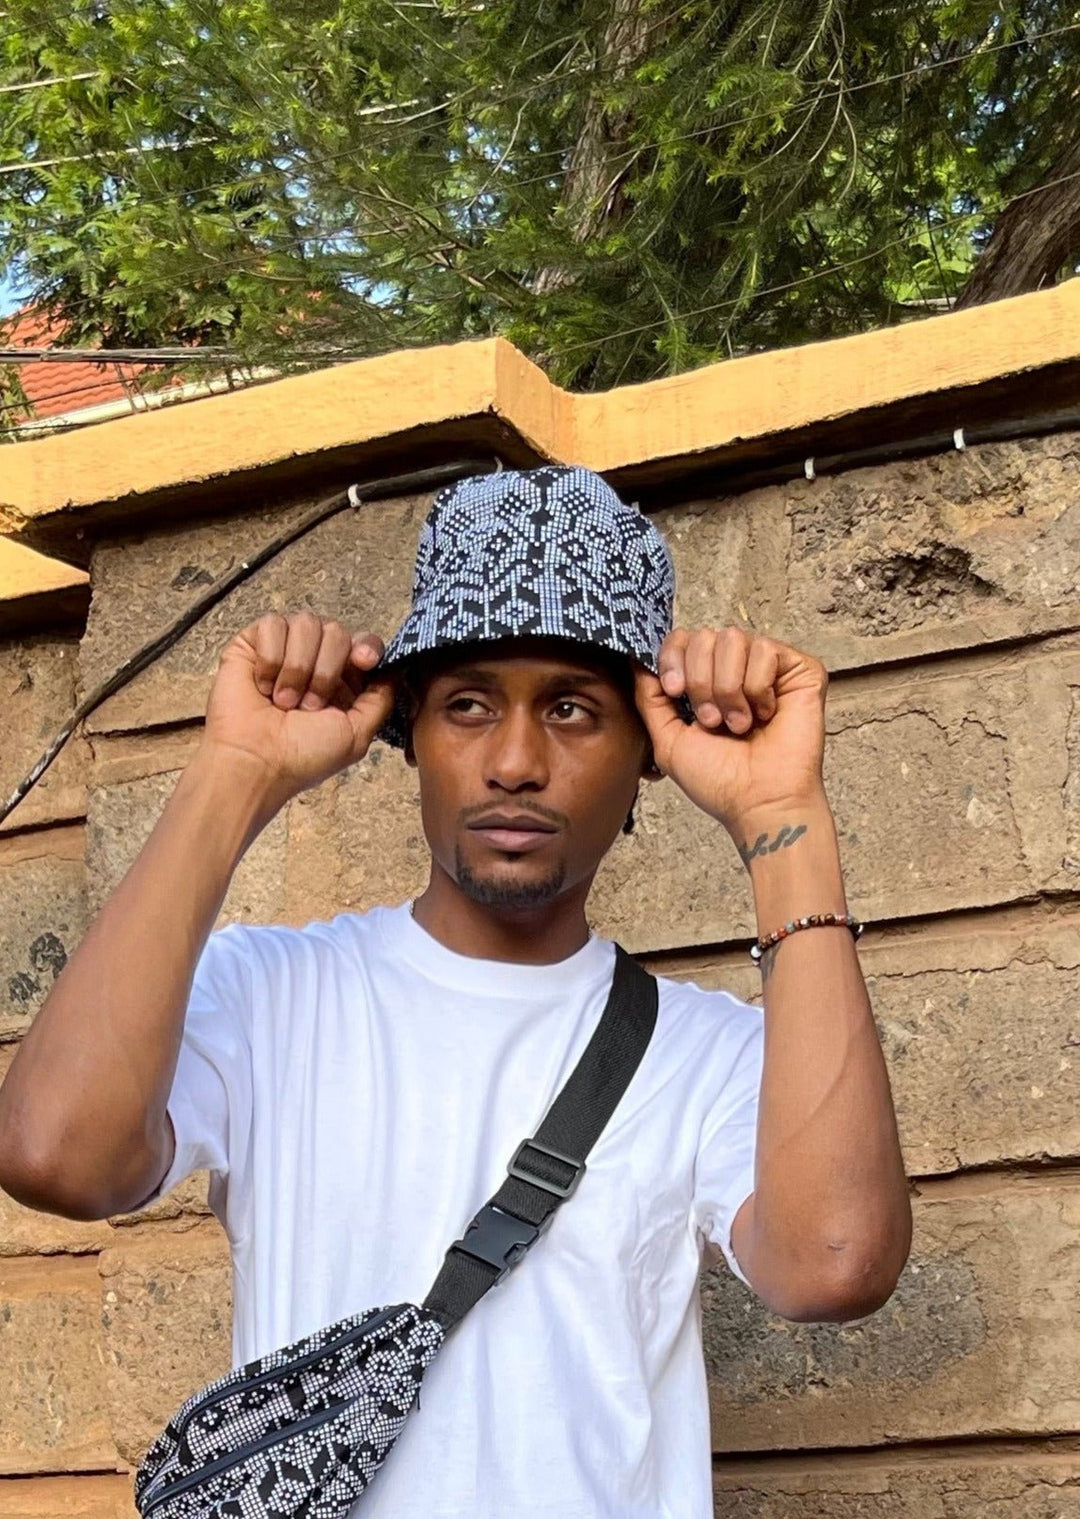 Bunte Bucket Hats & Fischerhüte ‚Dalili‘ - Partyoutift fair sozial nachhaltig designed in Kenia